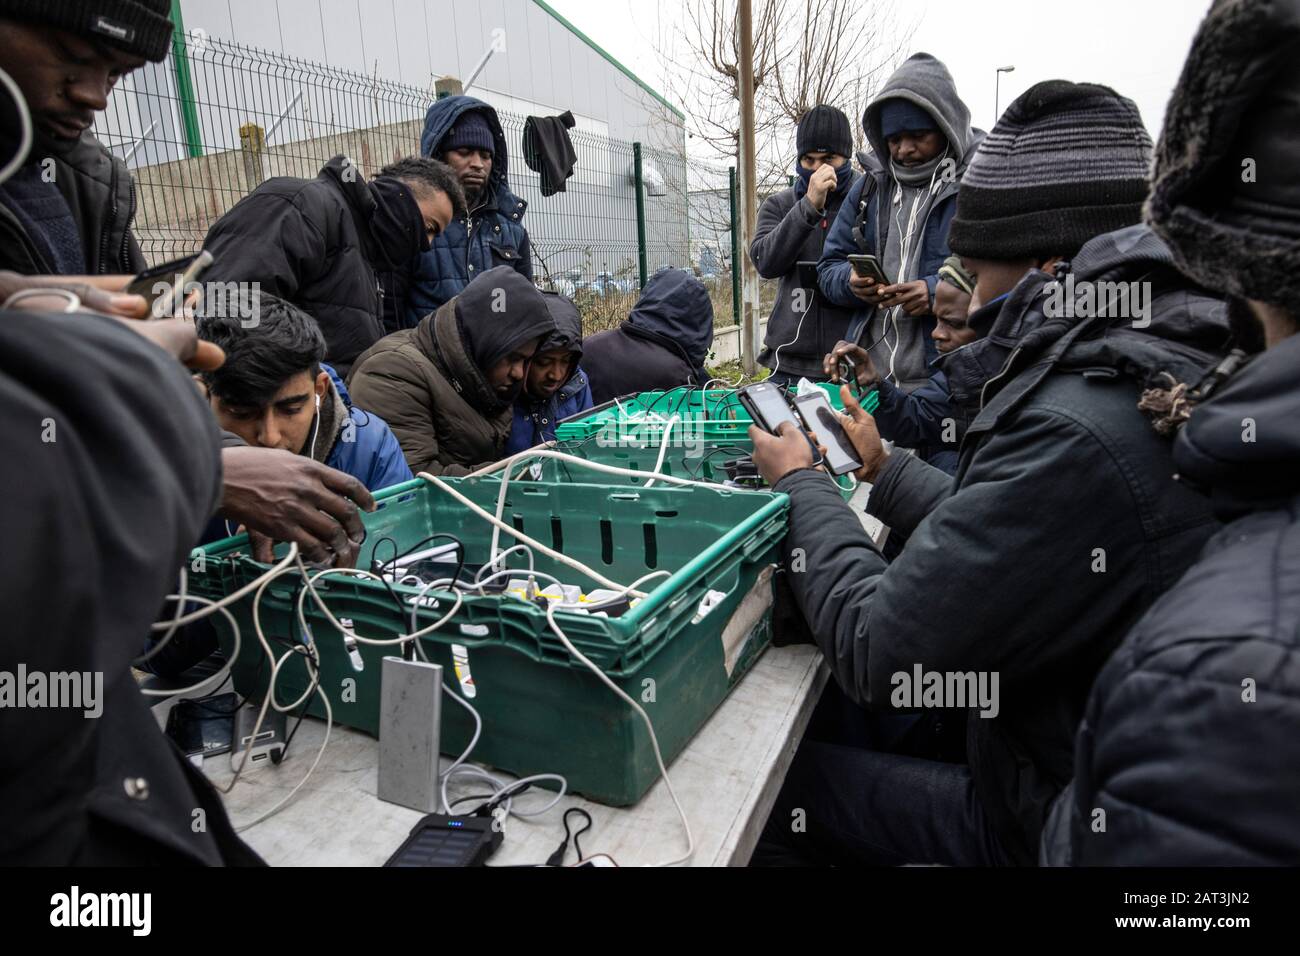 Les migrants dormant grossièrement dans les camps de réfugiés illégaux de Calais, à la périphérie du port de Calais, qui cherchent à traverser le canal vers le Royaume-Uni Banque D'Images